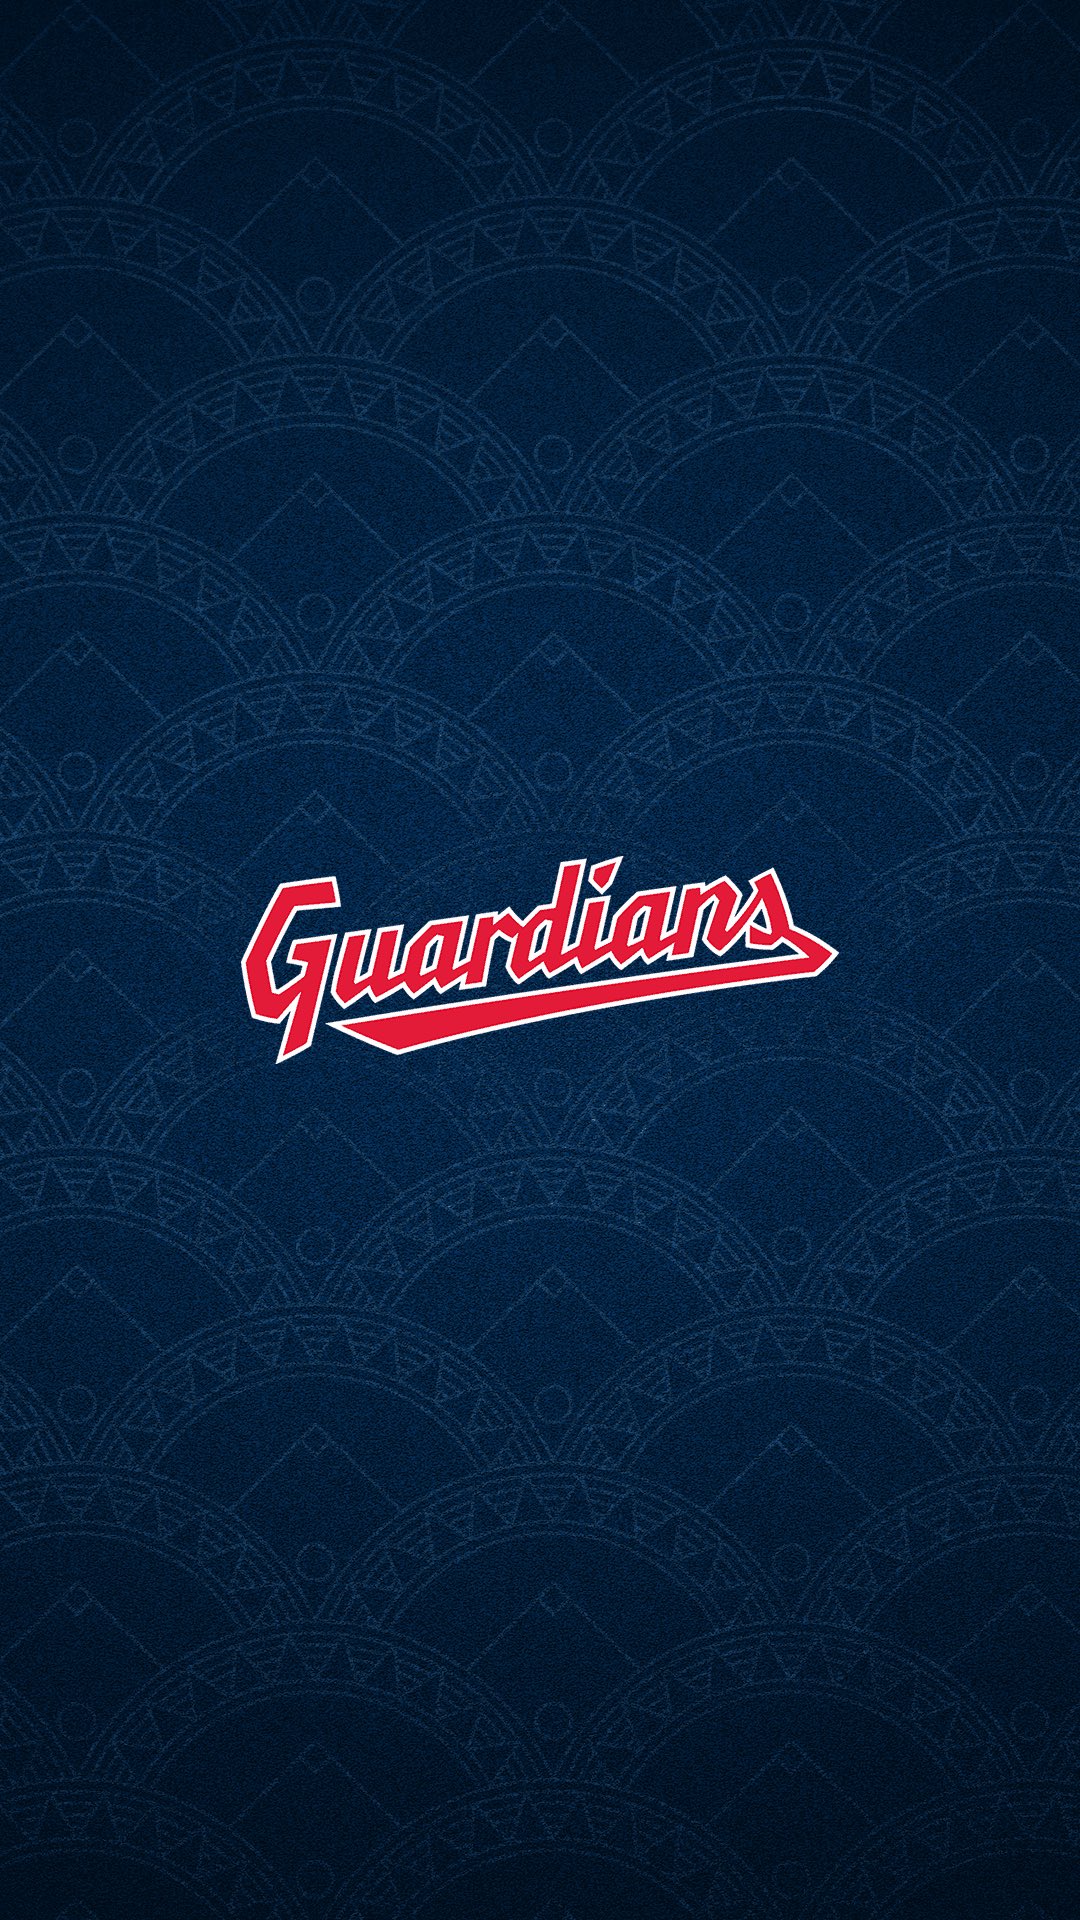 Cleveland Guardians  World Series Champs  Stephen Clark sgclarkcom